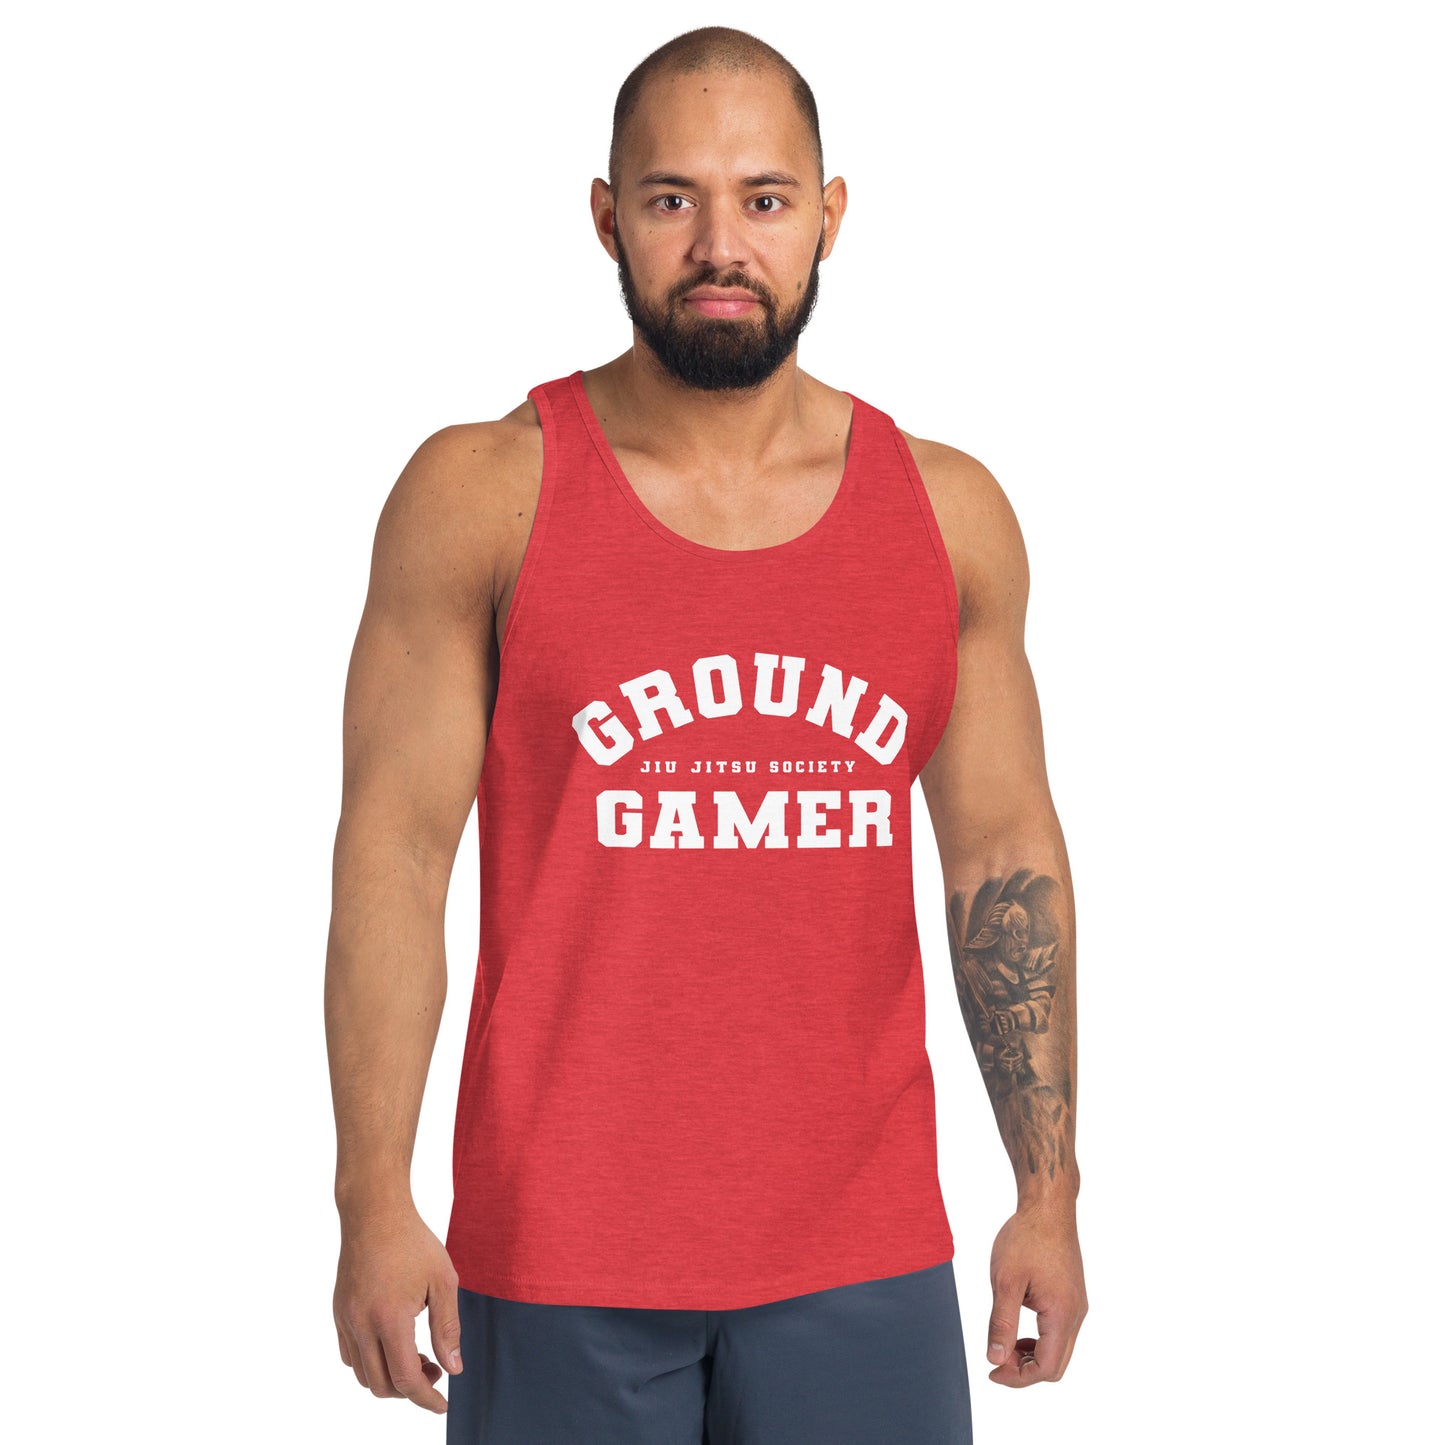 Men's Ground Gamer Tank Top